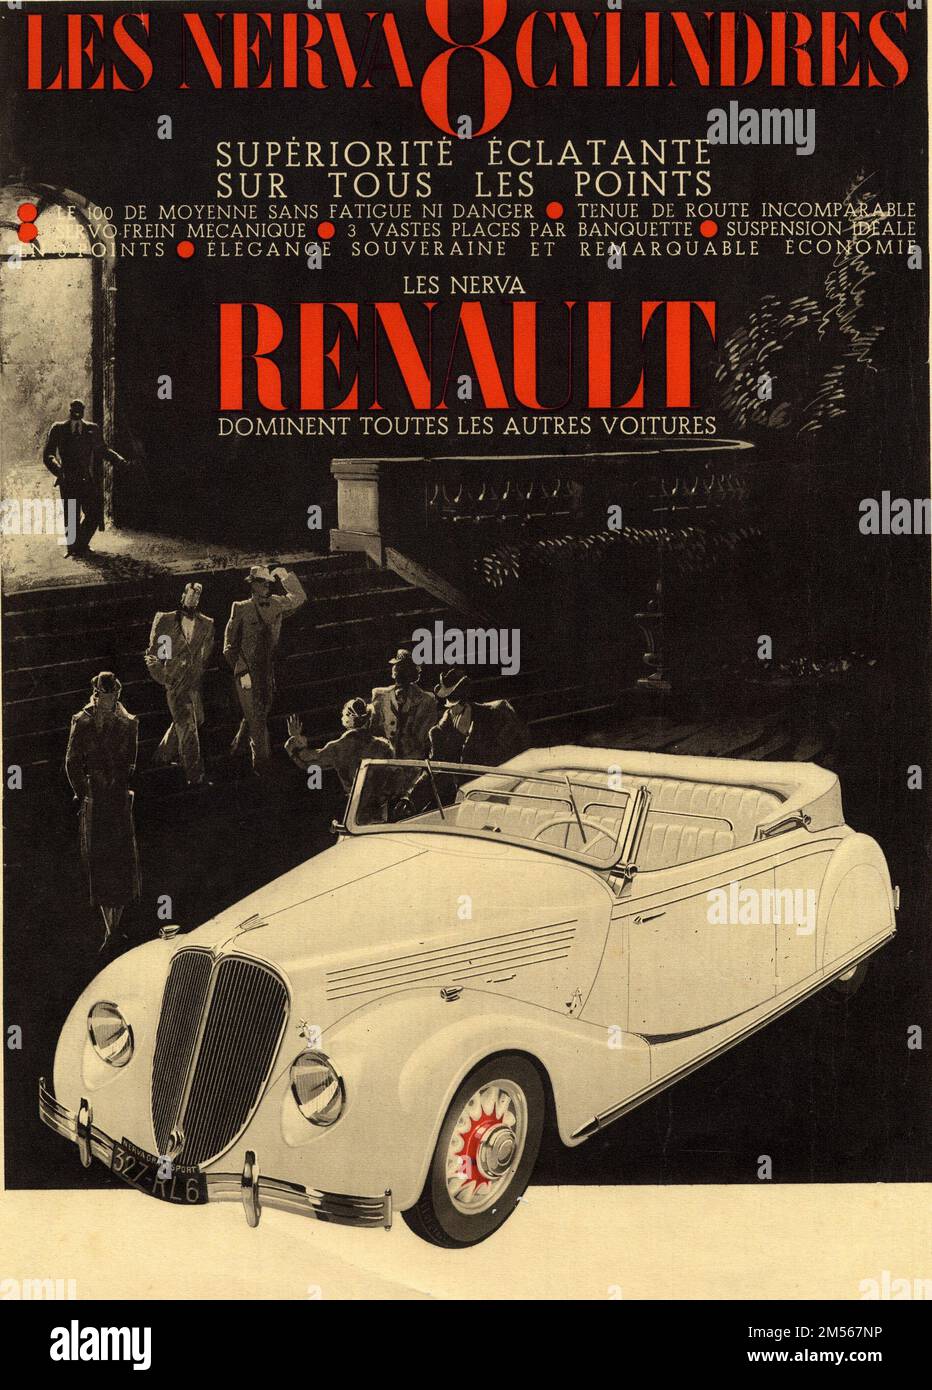 Publicité ancienne Renault NERVA Stock Photo